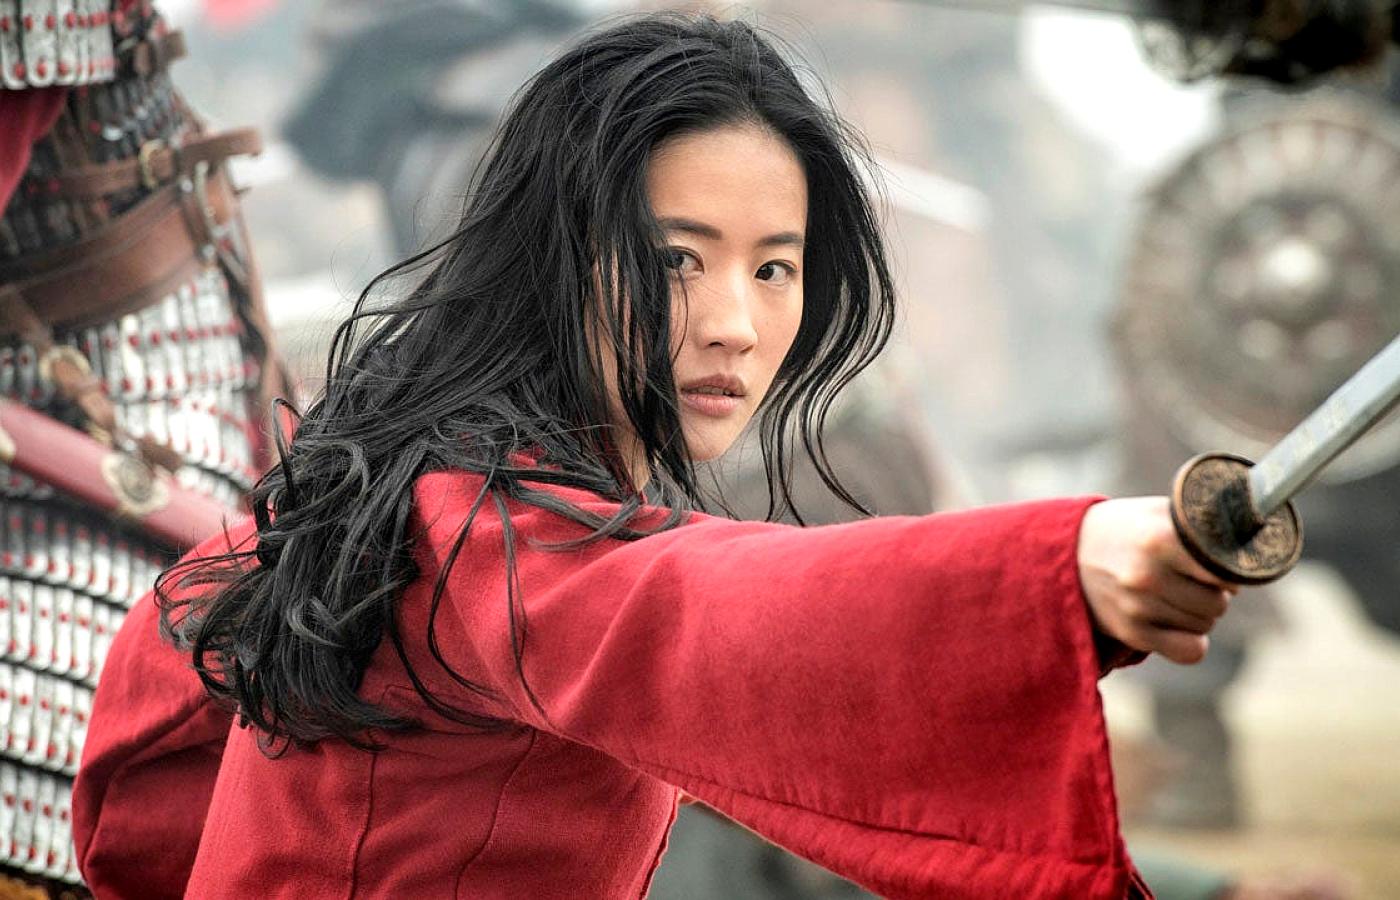 Kadr z filmu „Mulan”